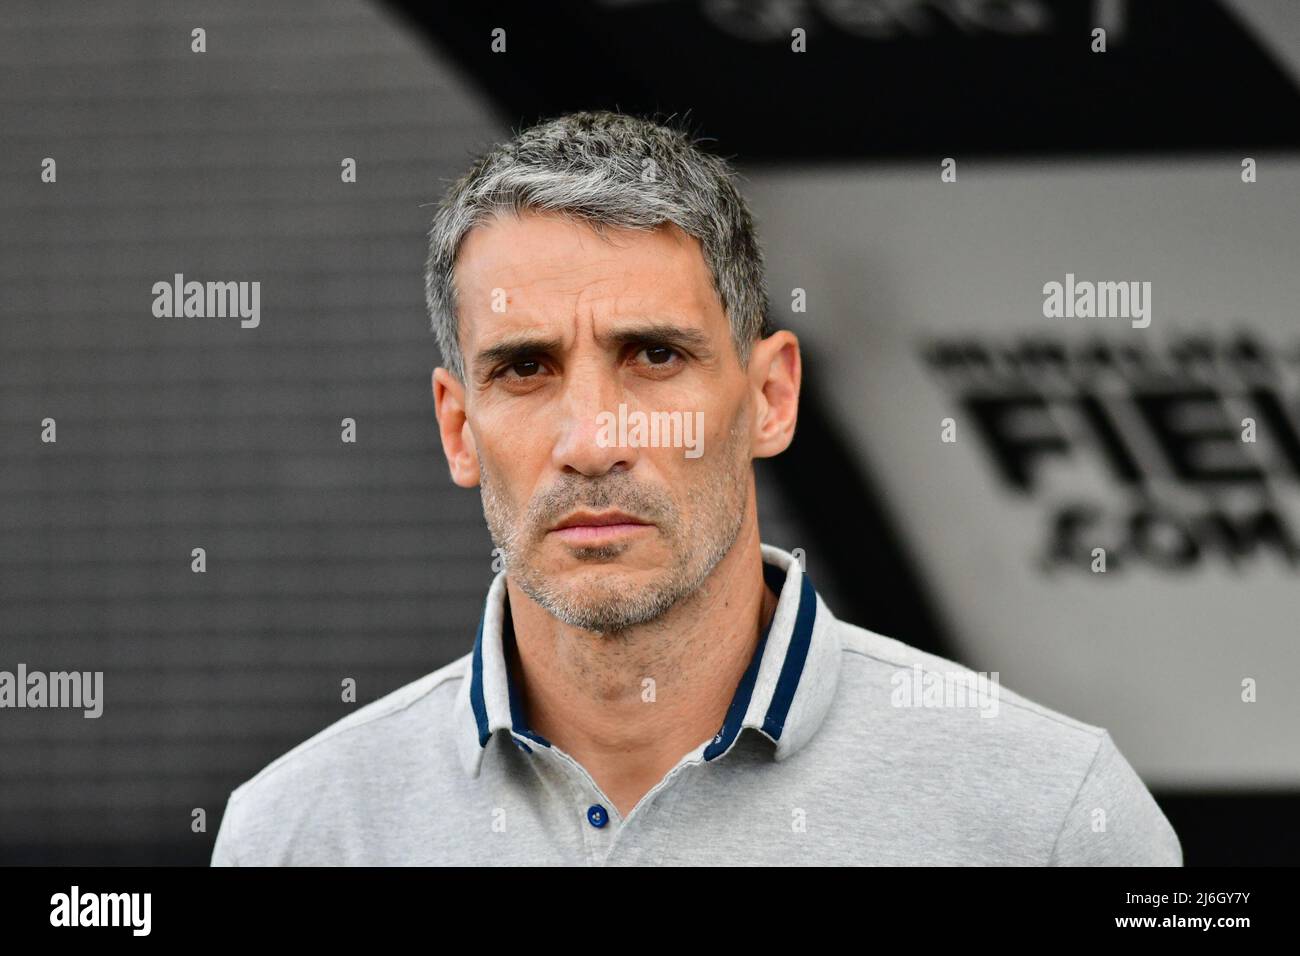 Felipe S. Mateos - Entrenador de fútbol / Football Coach - Club de